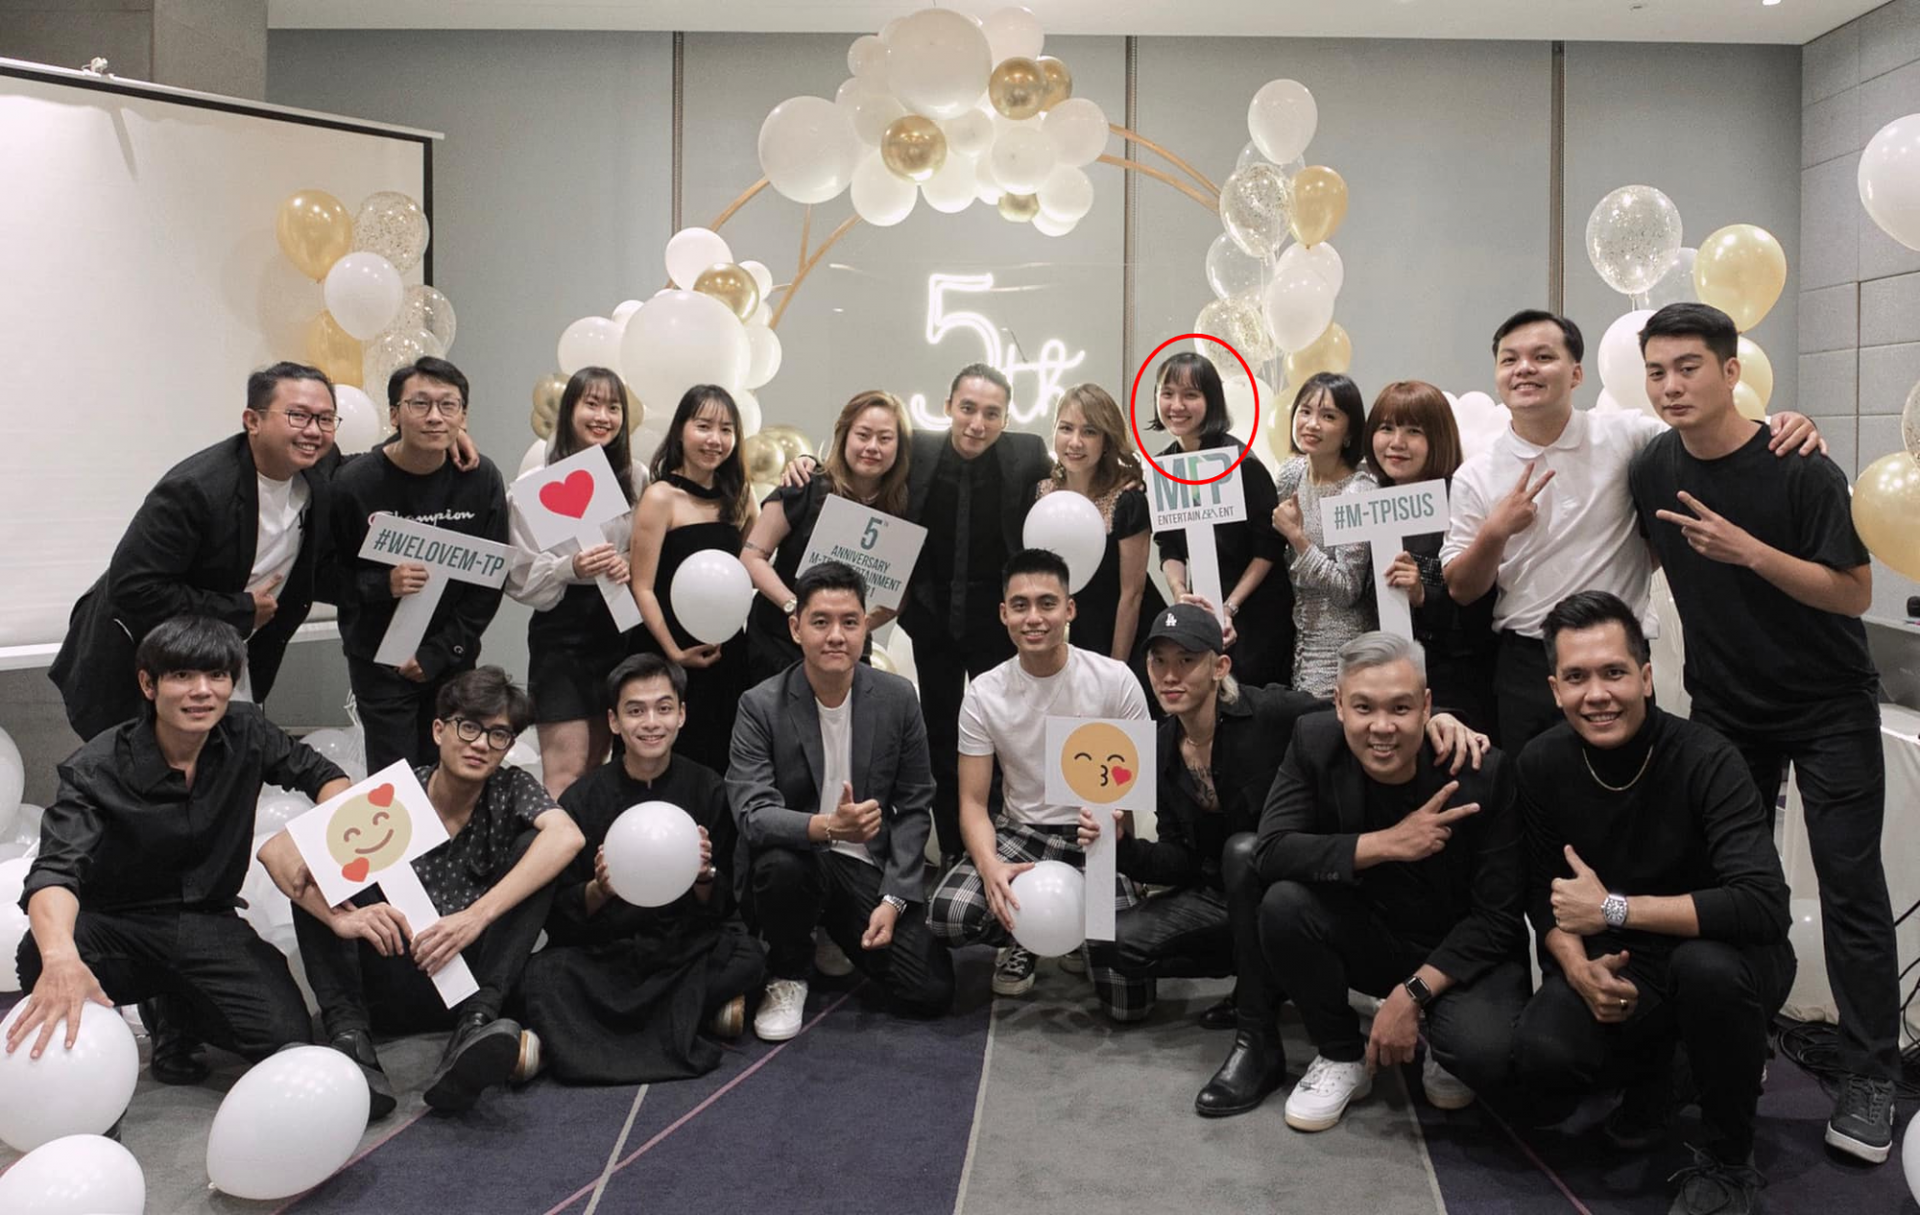 Hải Tú xuất hiện trong bức ảnh do Sơn Tùng M-TP và Kay Trần đăng tải nhân dịp kỉ niệm 5 năm sinh nhật công ty.